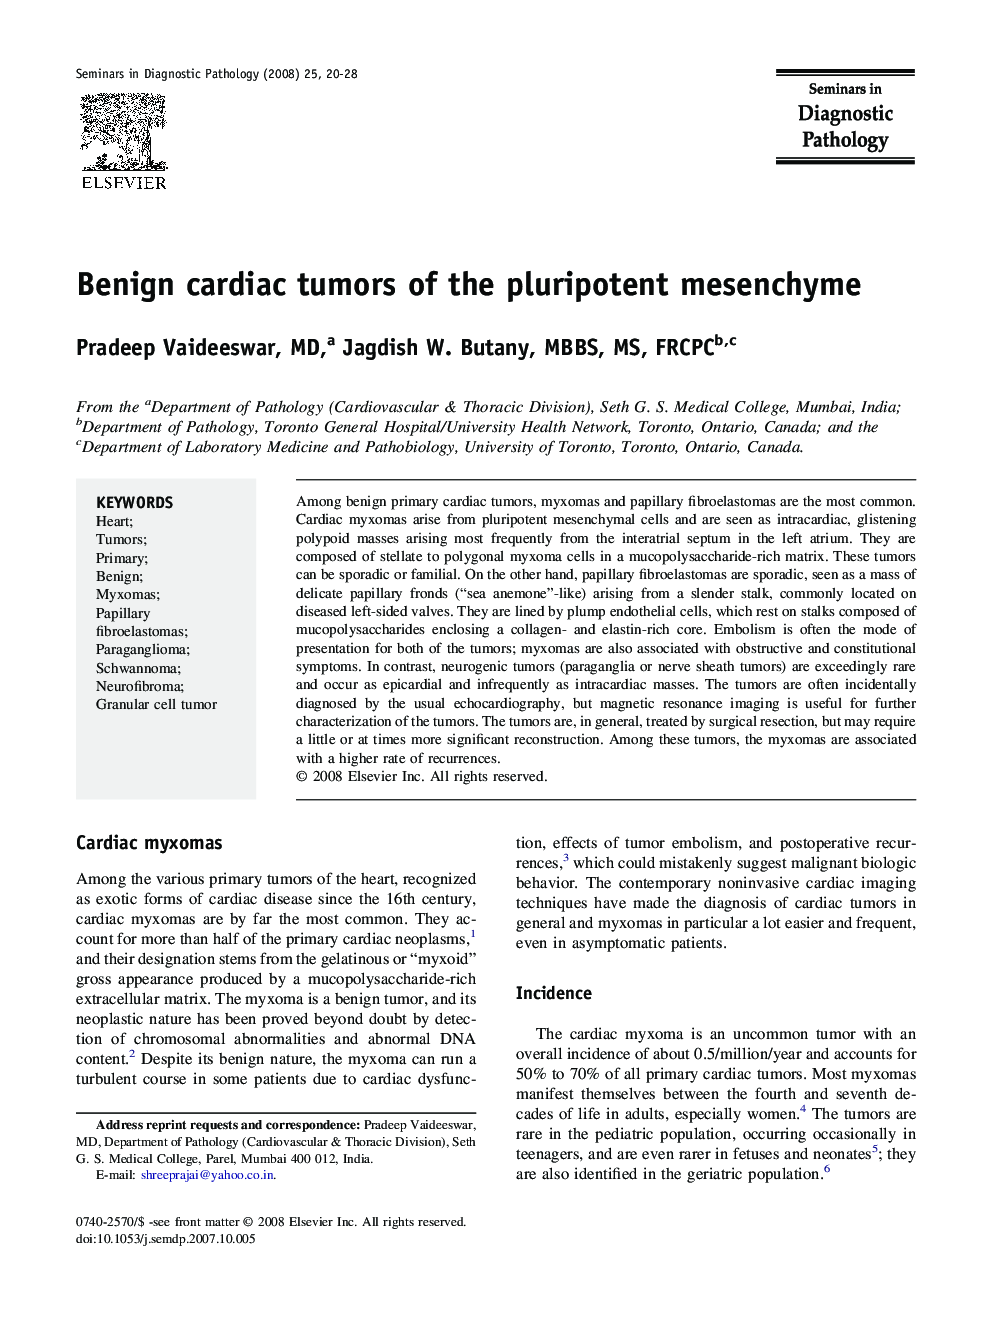 Benign cardiac tumors of the pluripotent mesenchyme